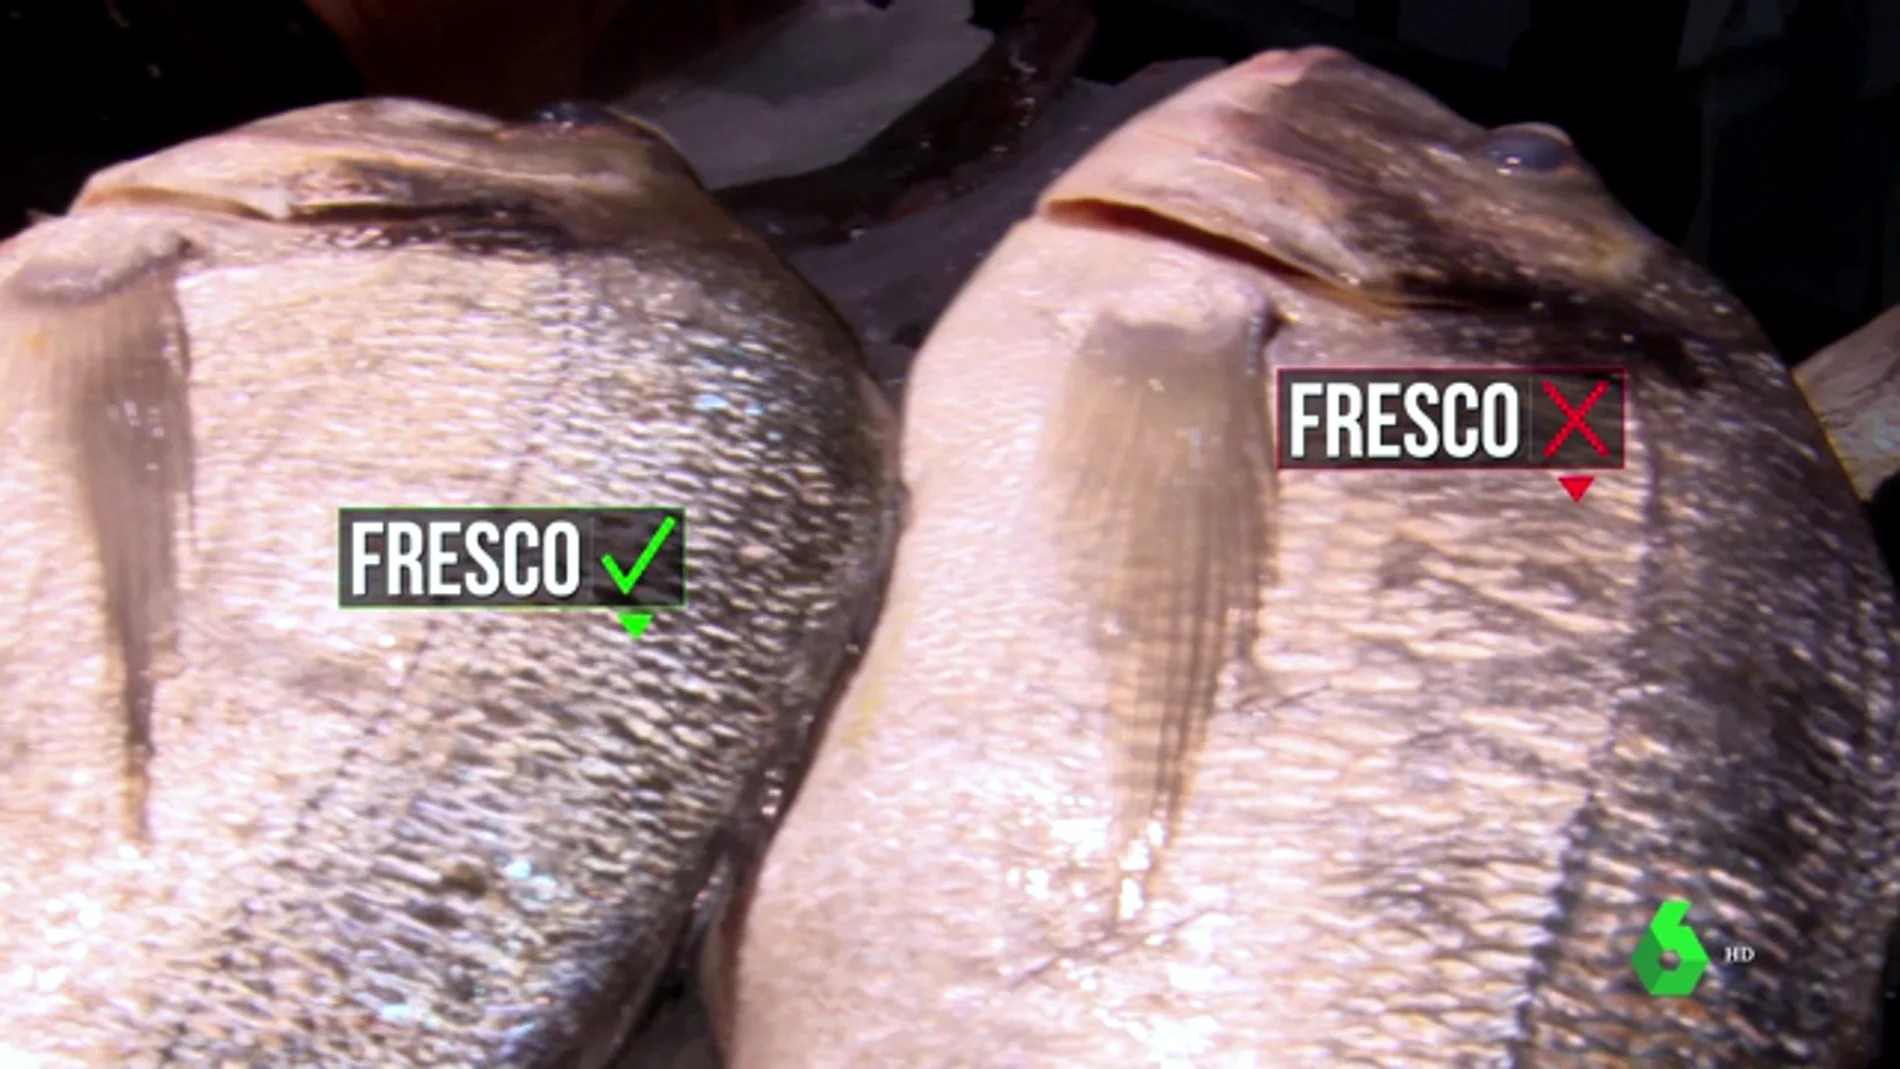 Cómo reconocer el pescado fresco